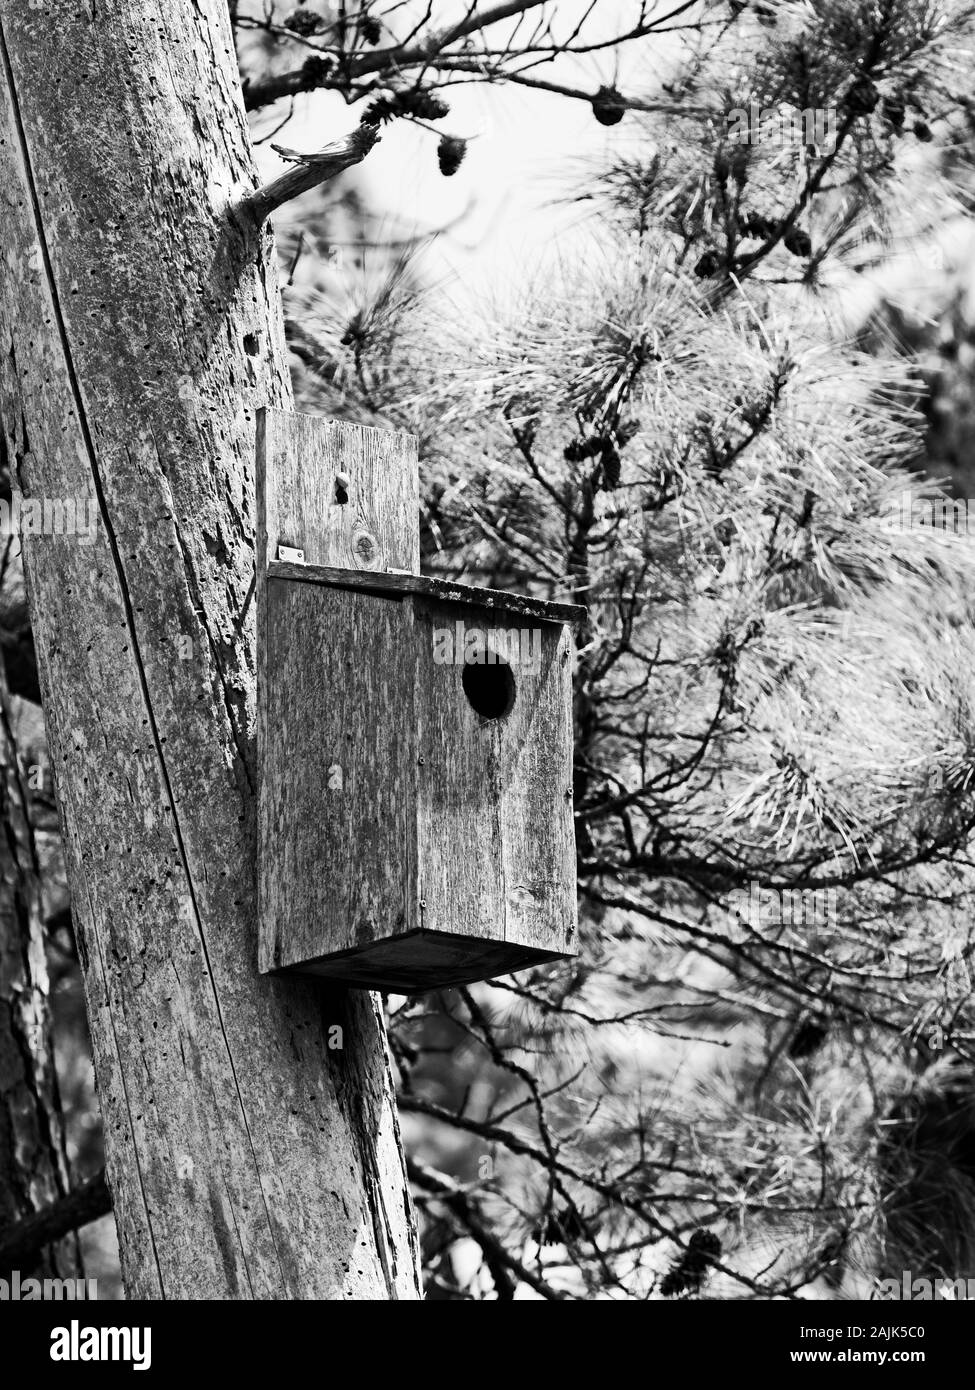 The Woodlands, TX USA - 04-02-2019 - Maison d'oiseau sur un arbre dans les bois en B&W Banque D'Images